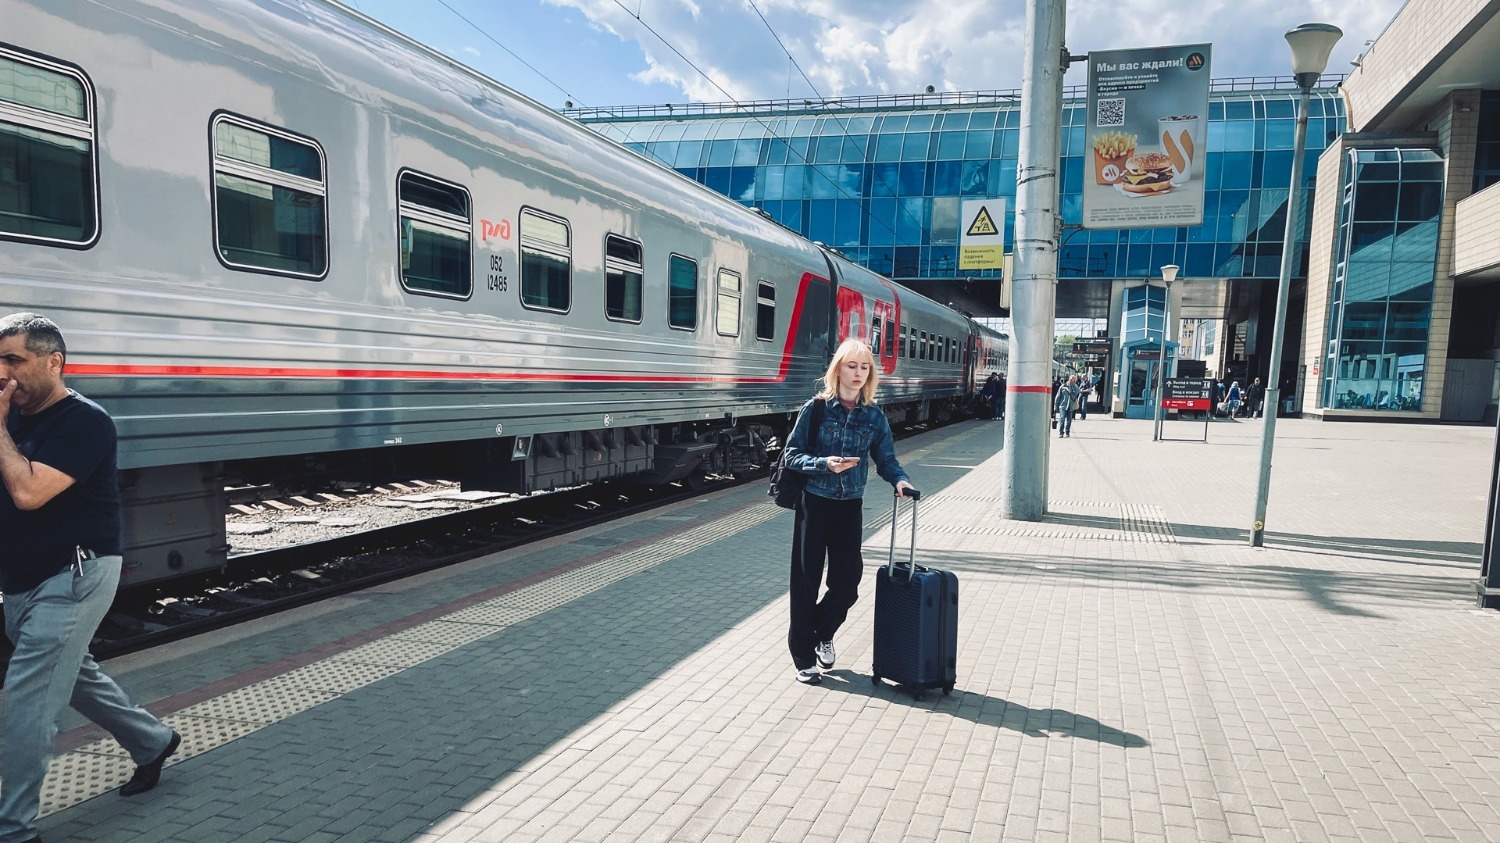 Начальник поезда, который следовал из Санкт-Петербурга и покинул ростовский вокзал в 17:27 рассказал журналисту, что обстановка в поезде спокойная.